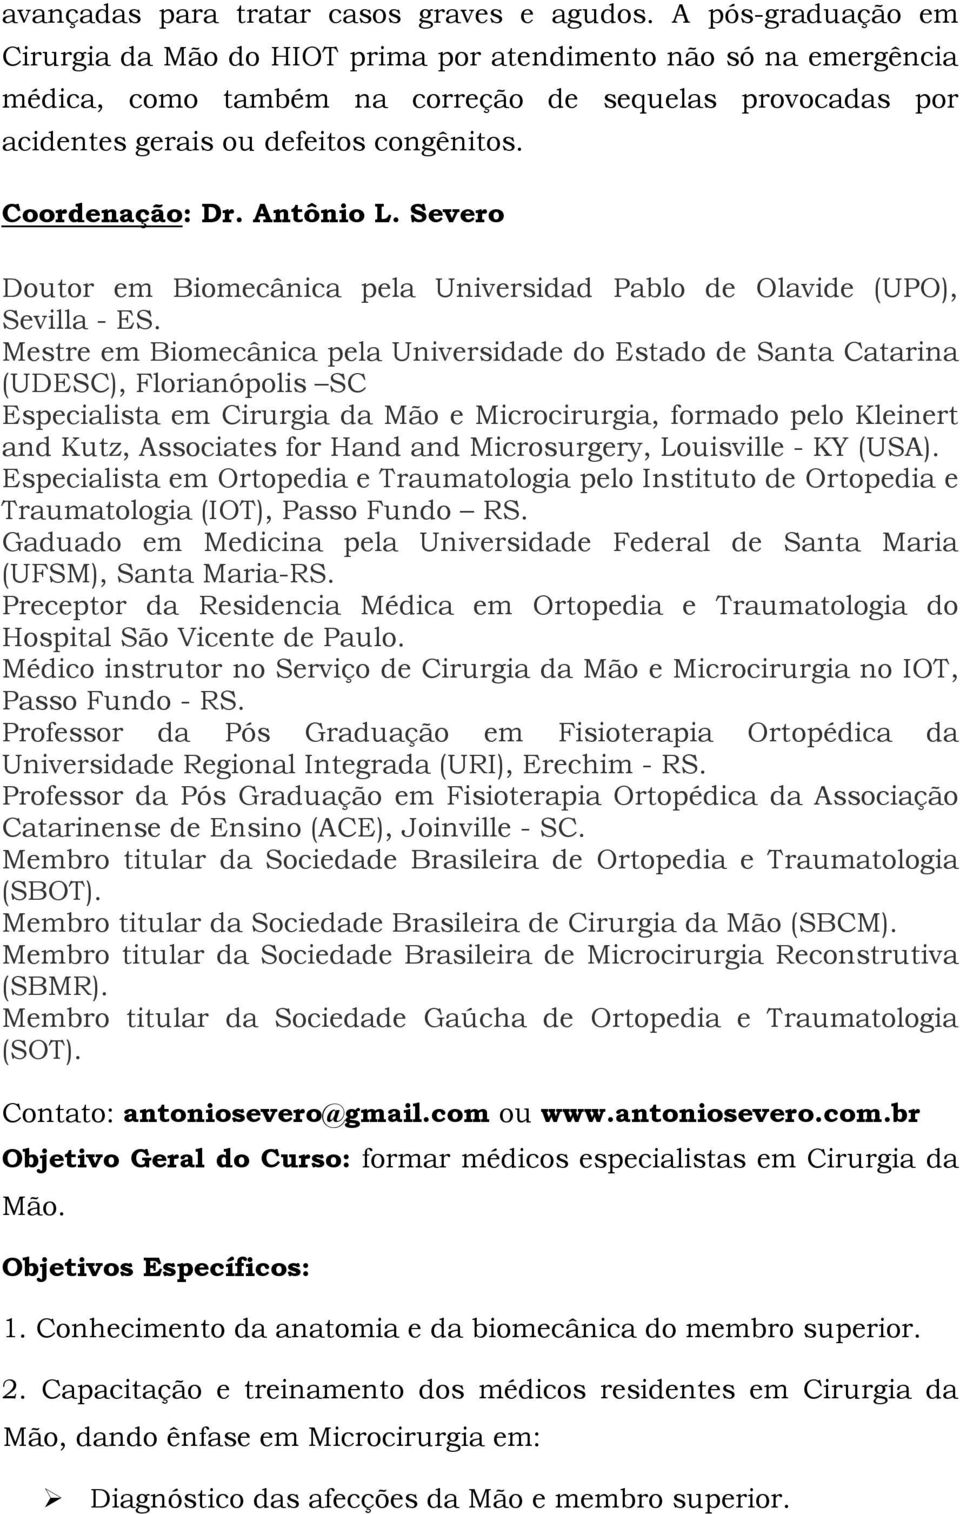 Coordenação: Dr. Antônio L. Severo Doutor em Biomecânica pela Universidad Pablo de Olavide (UPO), Sevilla - ES.